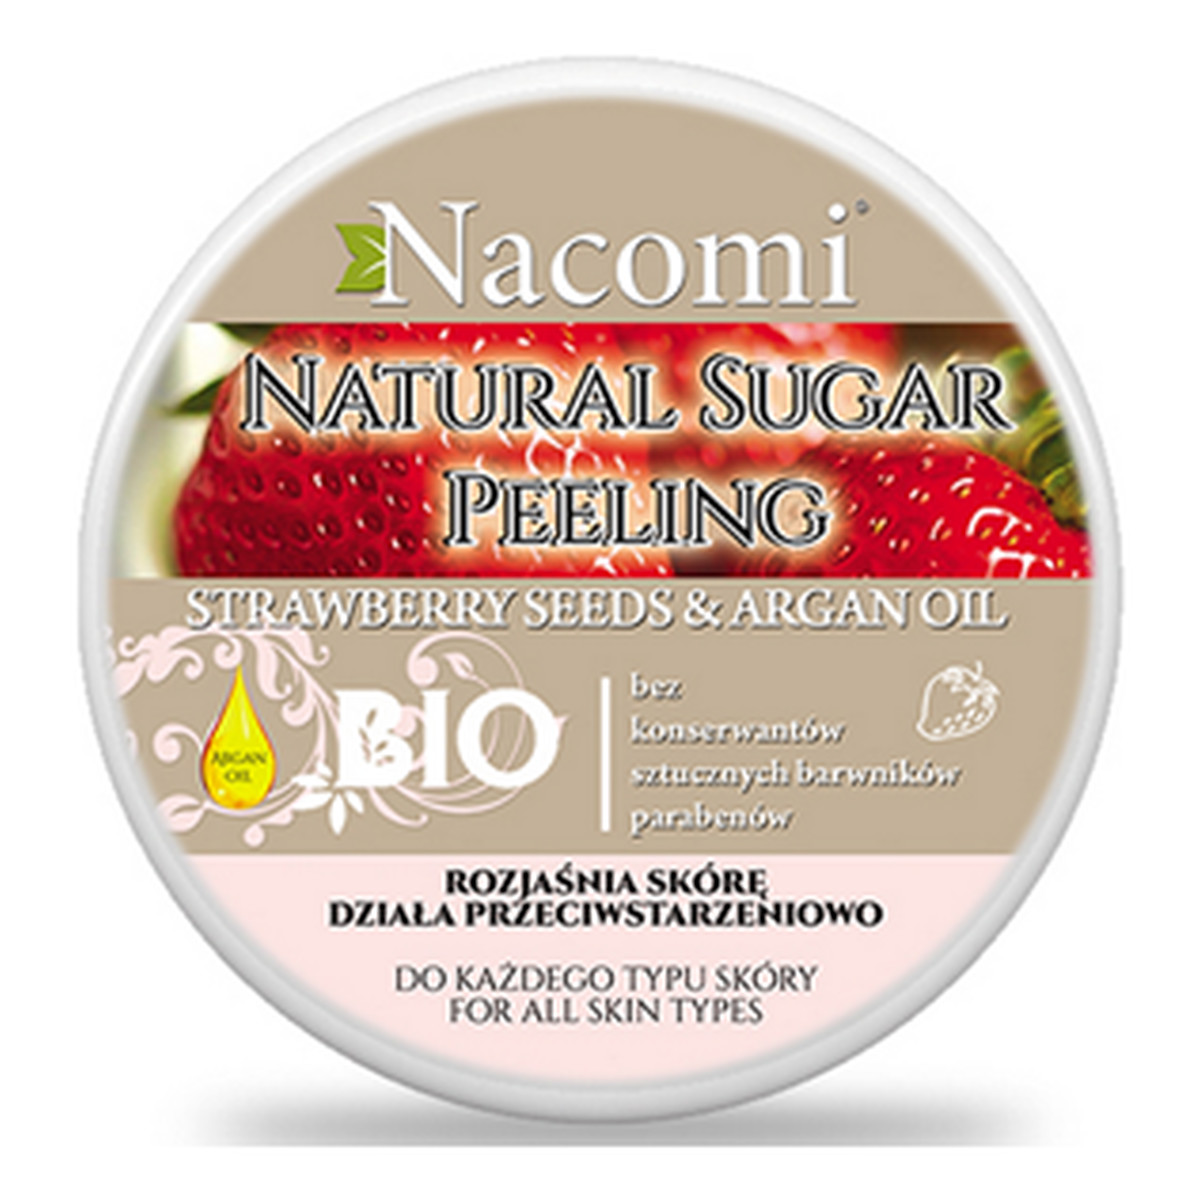 Nacomi Strawberry Seeds & Argan Oil Natural Sugar Peeling Peeling Cukrowy Truskawka Olej Arganowy Rozjaśnia skórę Działa przeciwstarzeniowo 100ml